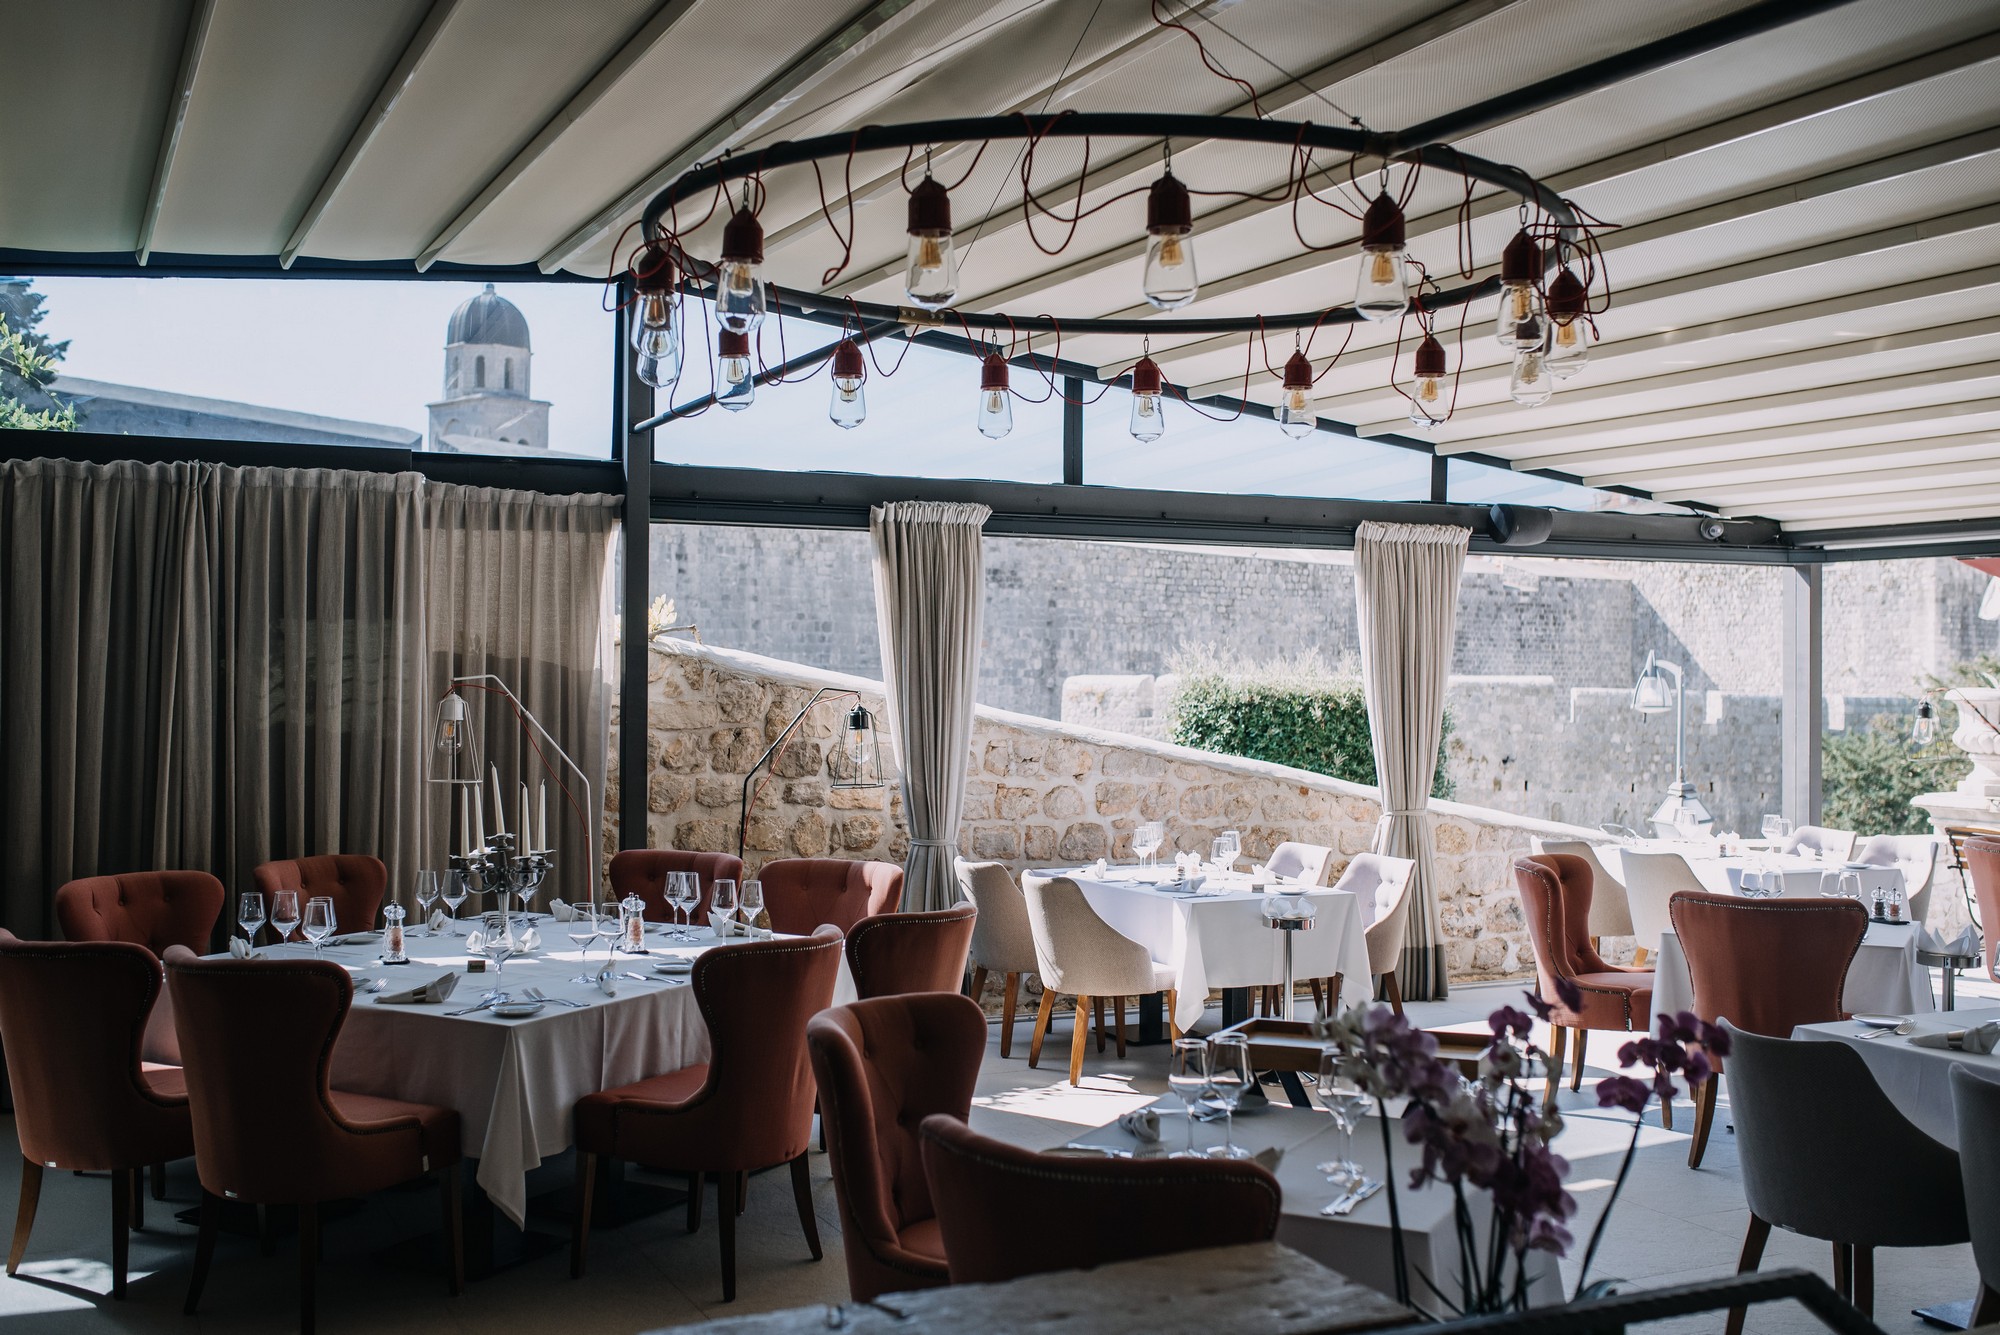 Posat Dubrovnik - fine dining restaurant in Dubrovnik